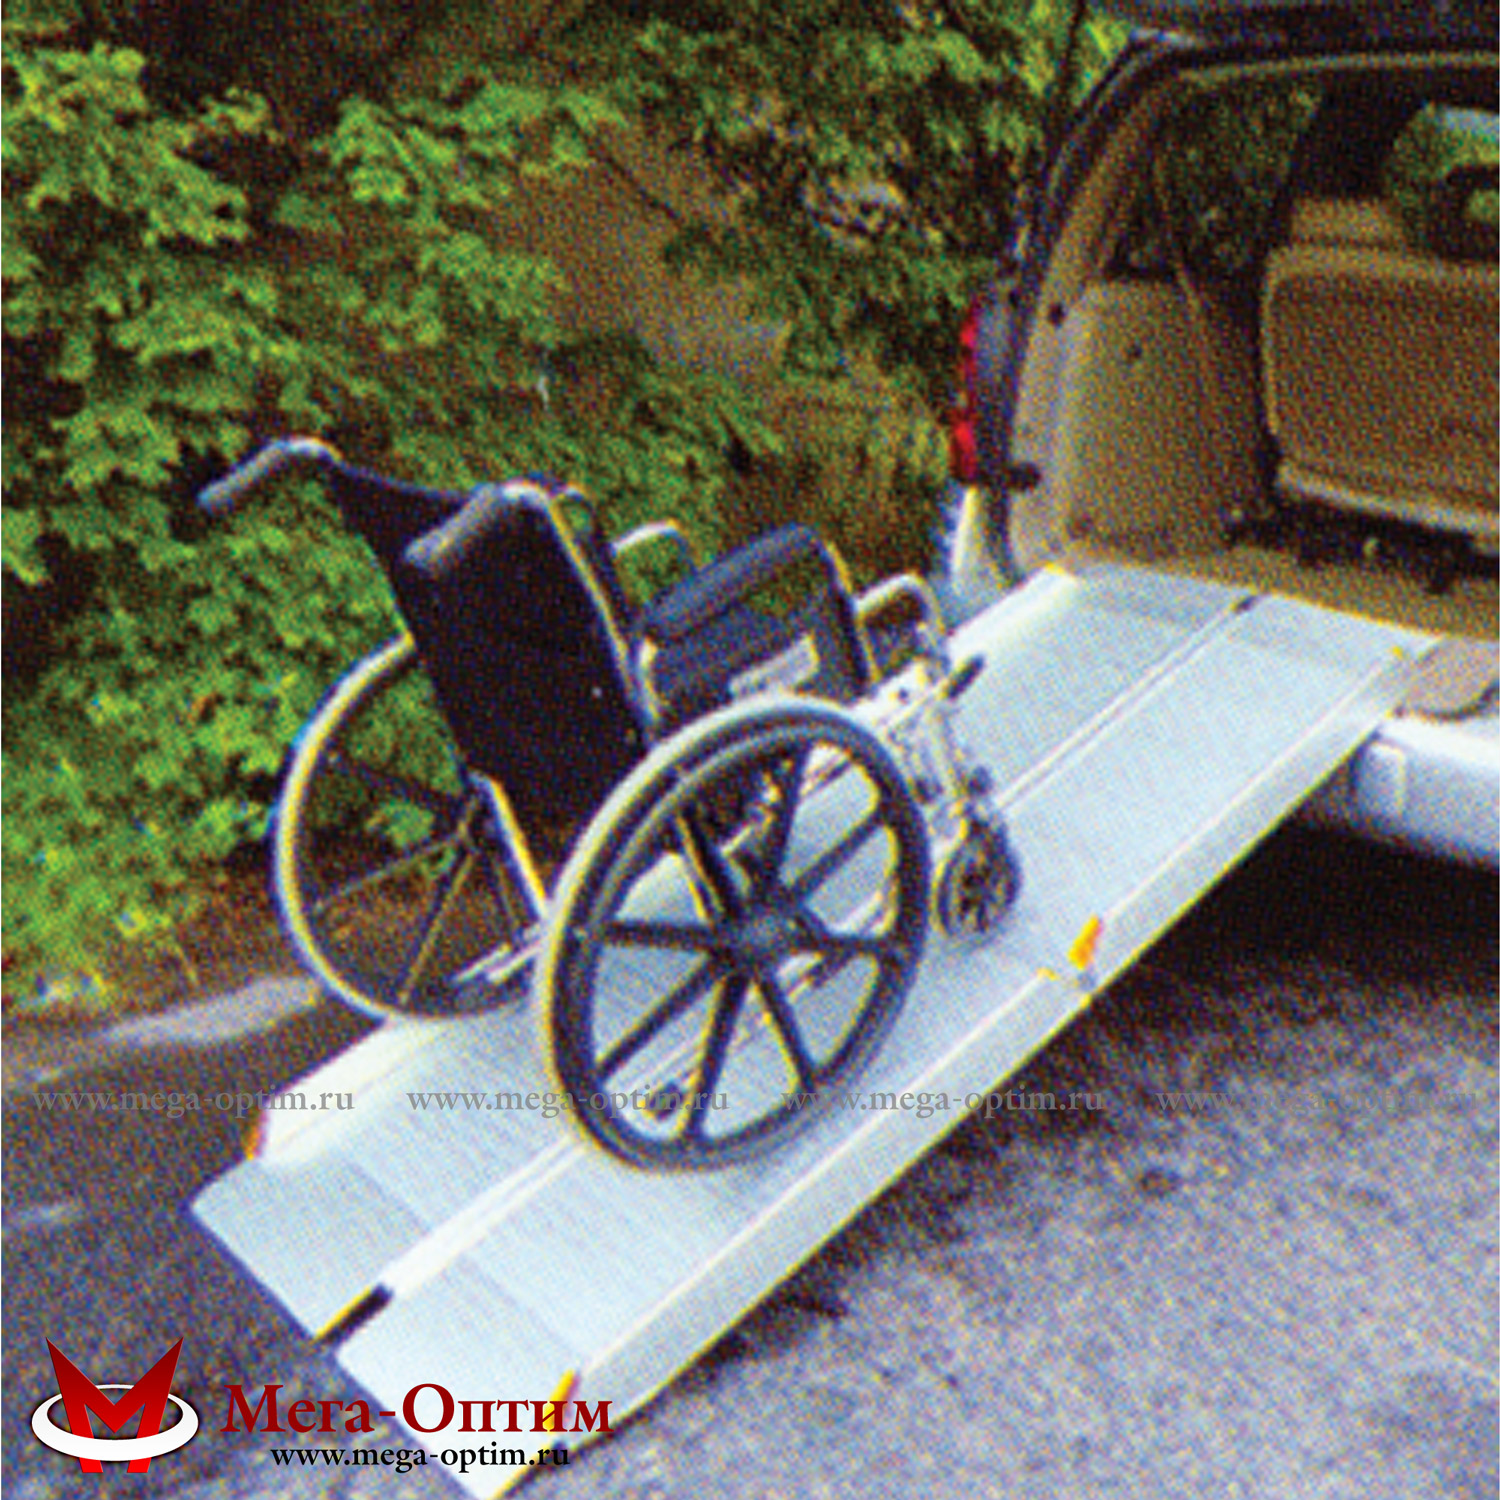 пандусы алюминиевые для инвалидных колясок